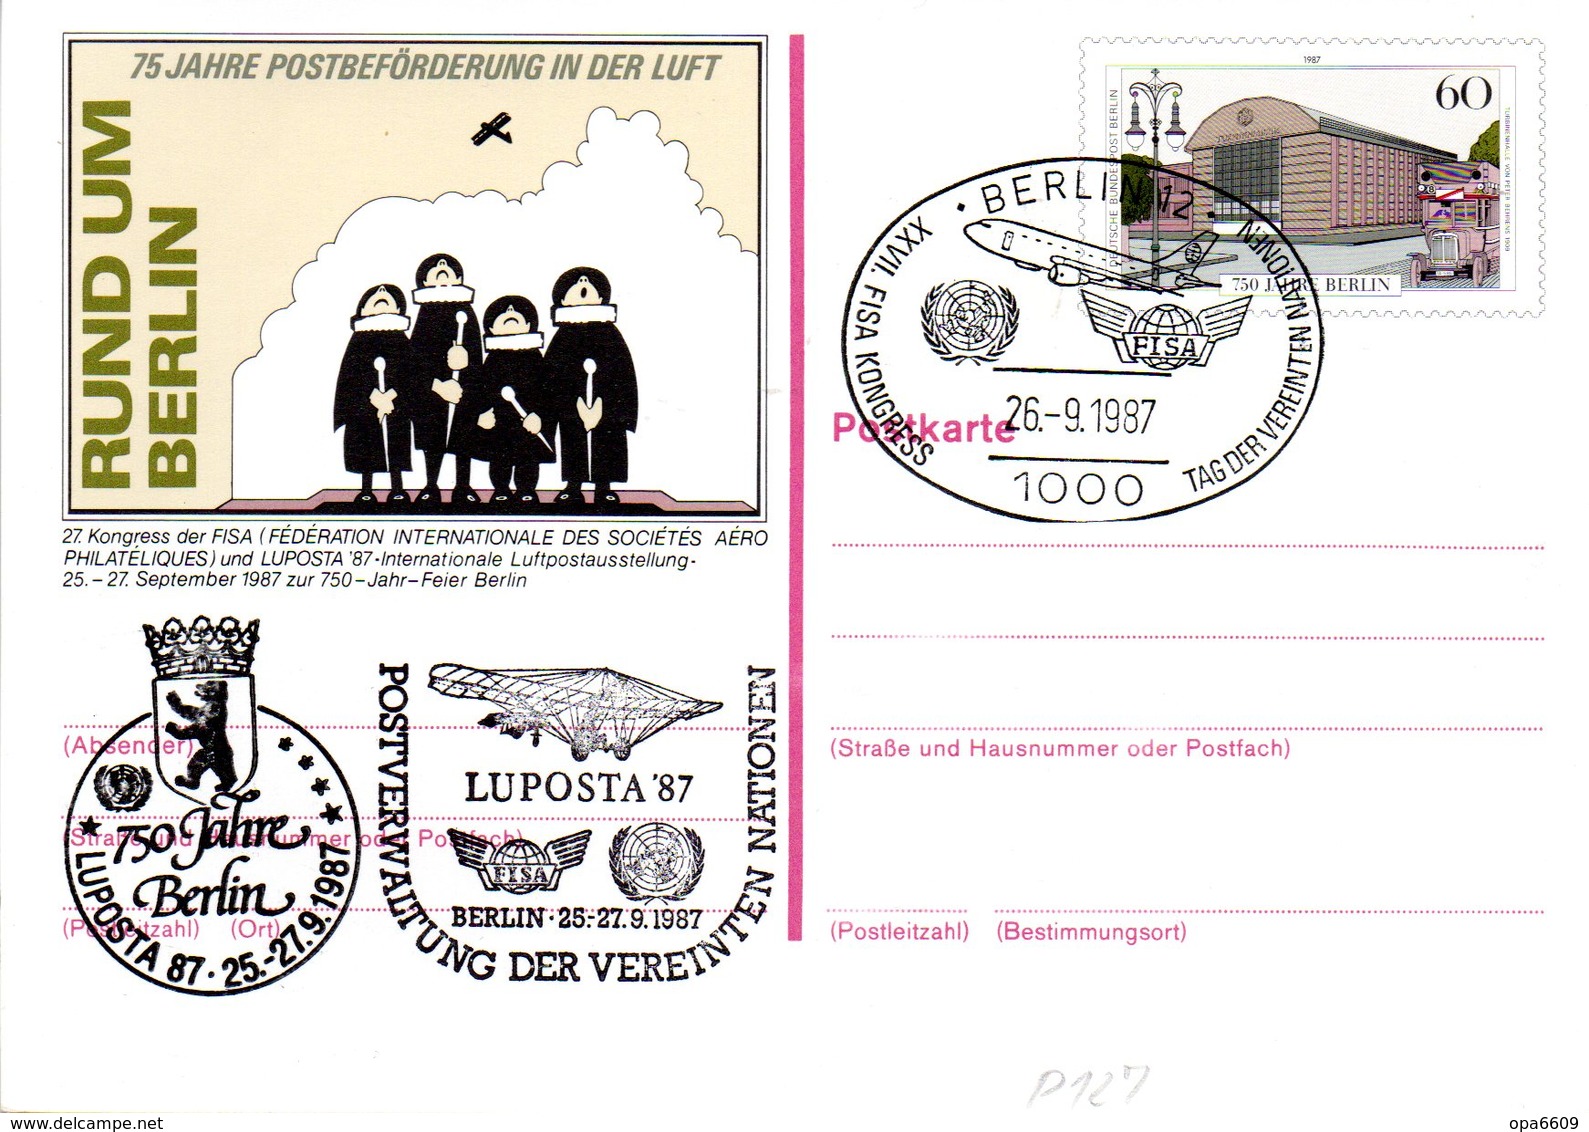 WB Amtliche Ganzsachen-Sonderpostkarte P 127 "LUPOSTA'87" Wst."750 Jahre Berlin" 60(Pf) Mehrfarbig, SSt 26.9.87 BERLIN - Postcards - Used